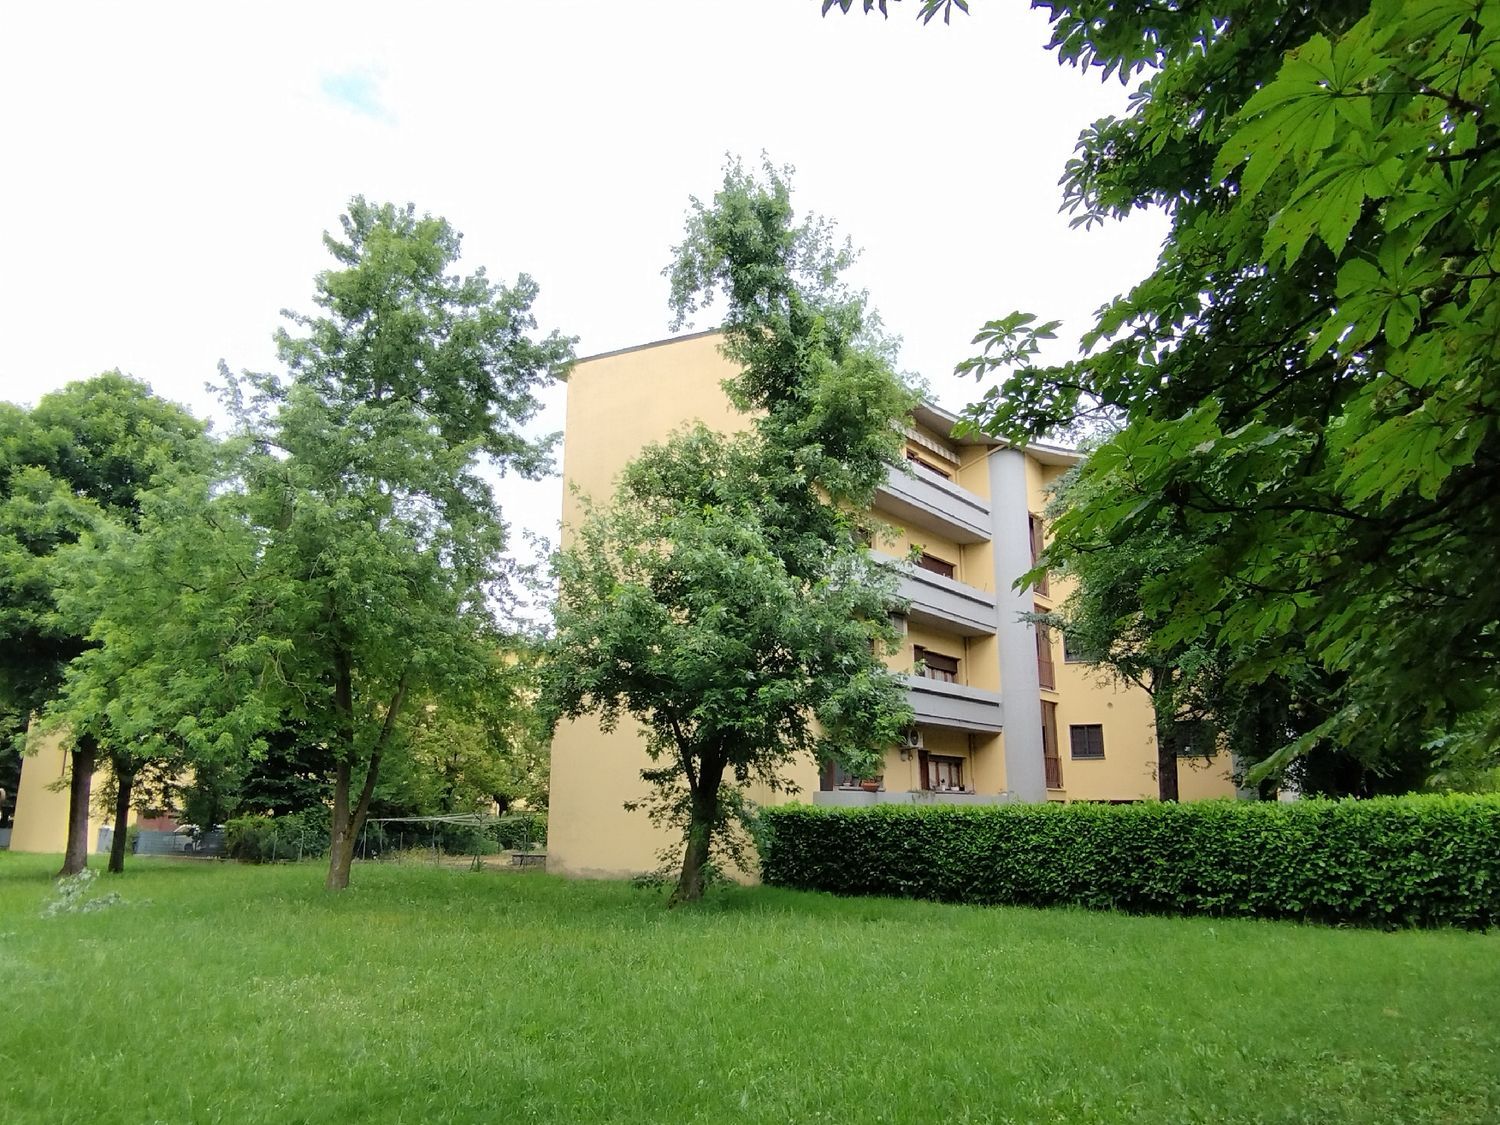 Appartamento in vendita a Sant'Agata Bolognese, 4 locali, prezzo € 145.000 | PortaleAgenzieImmobiliari.it